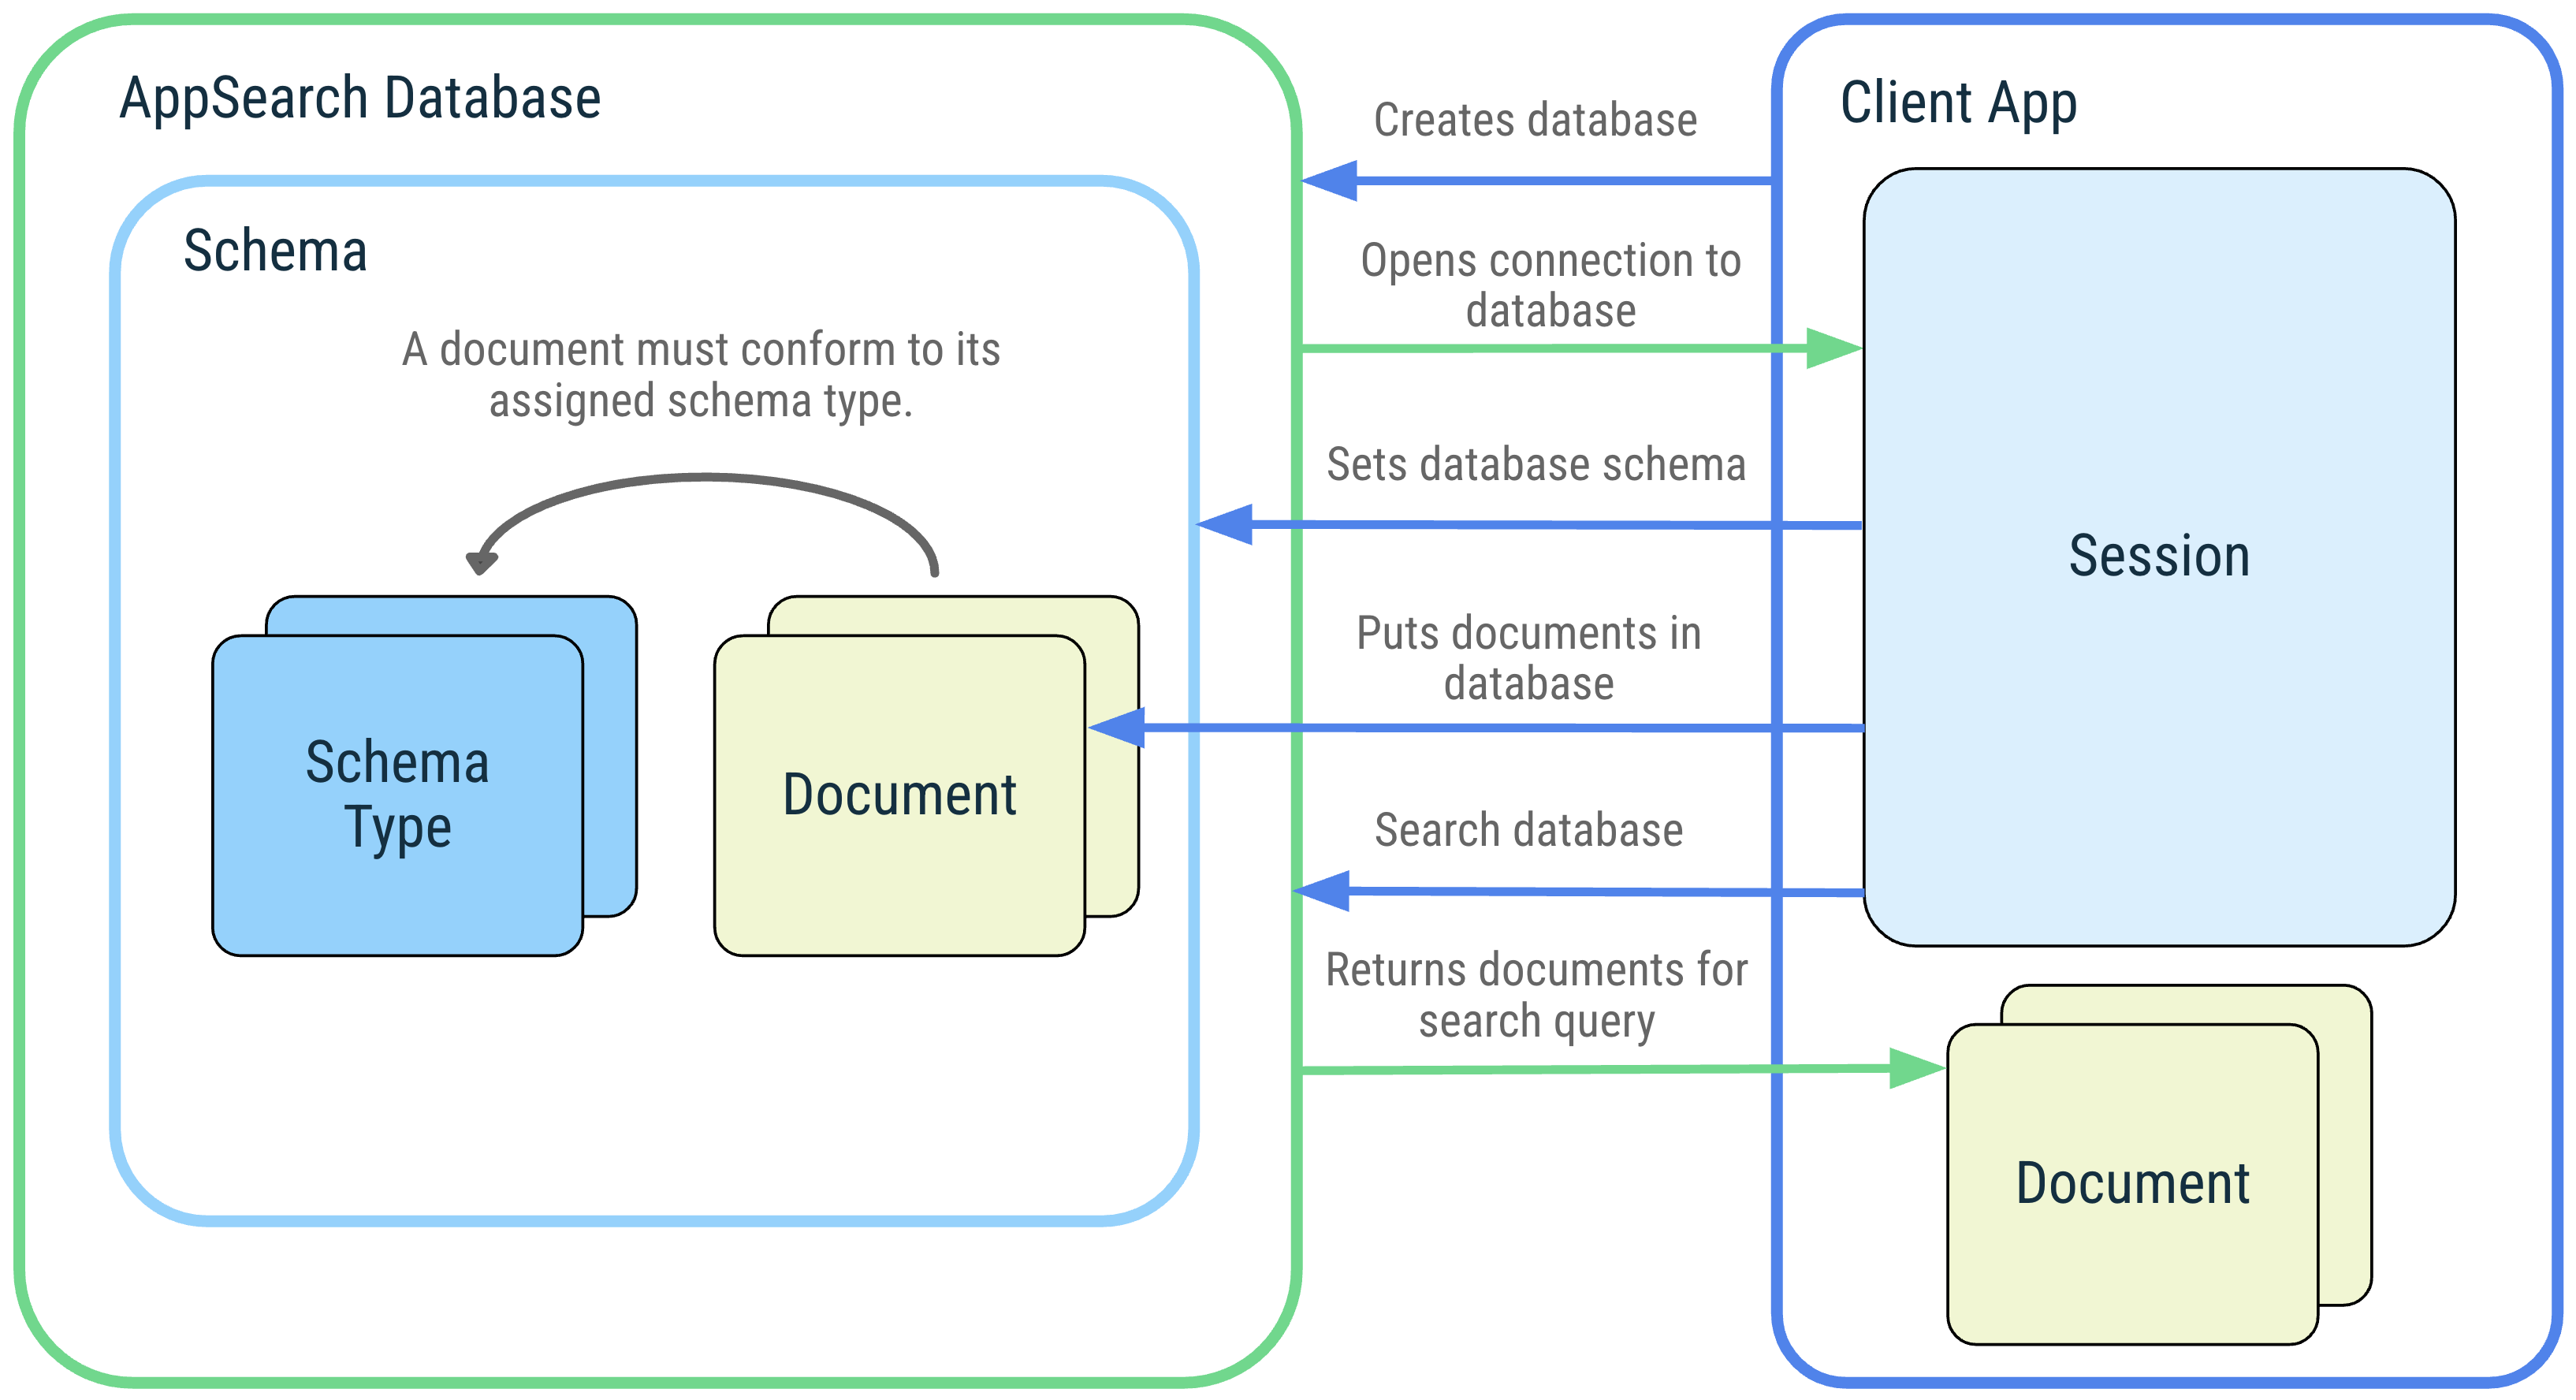 Descrição
do diagrama de um aplicativo cliente e as interações dele com os seguintes
conceitos do AppSearch: banco de dados do AppSearch, esquema, tipos de esquema, documentos,
sessão e pesquisa.